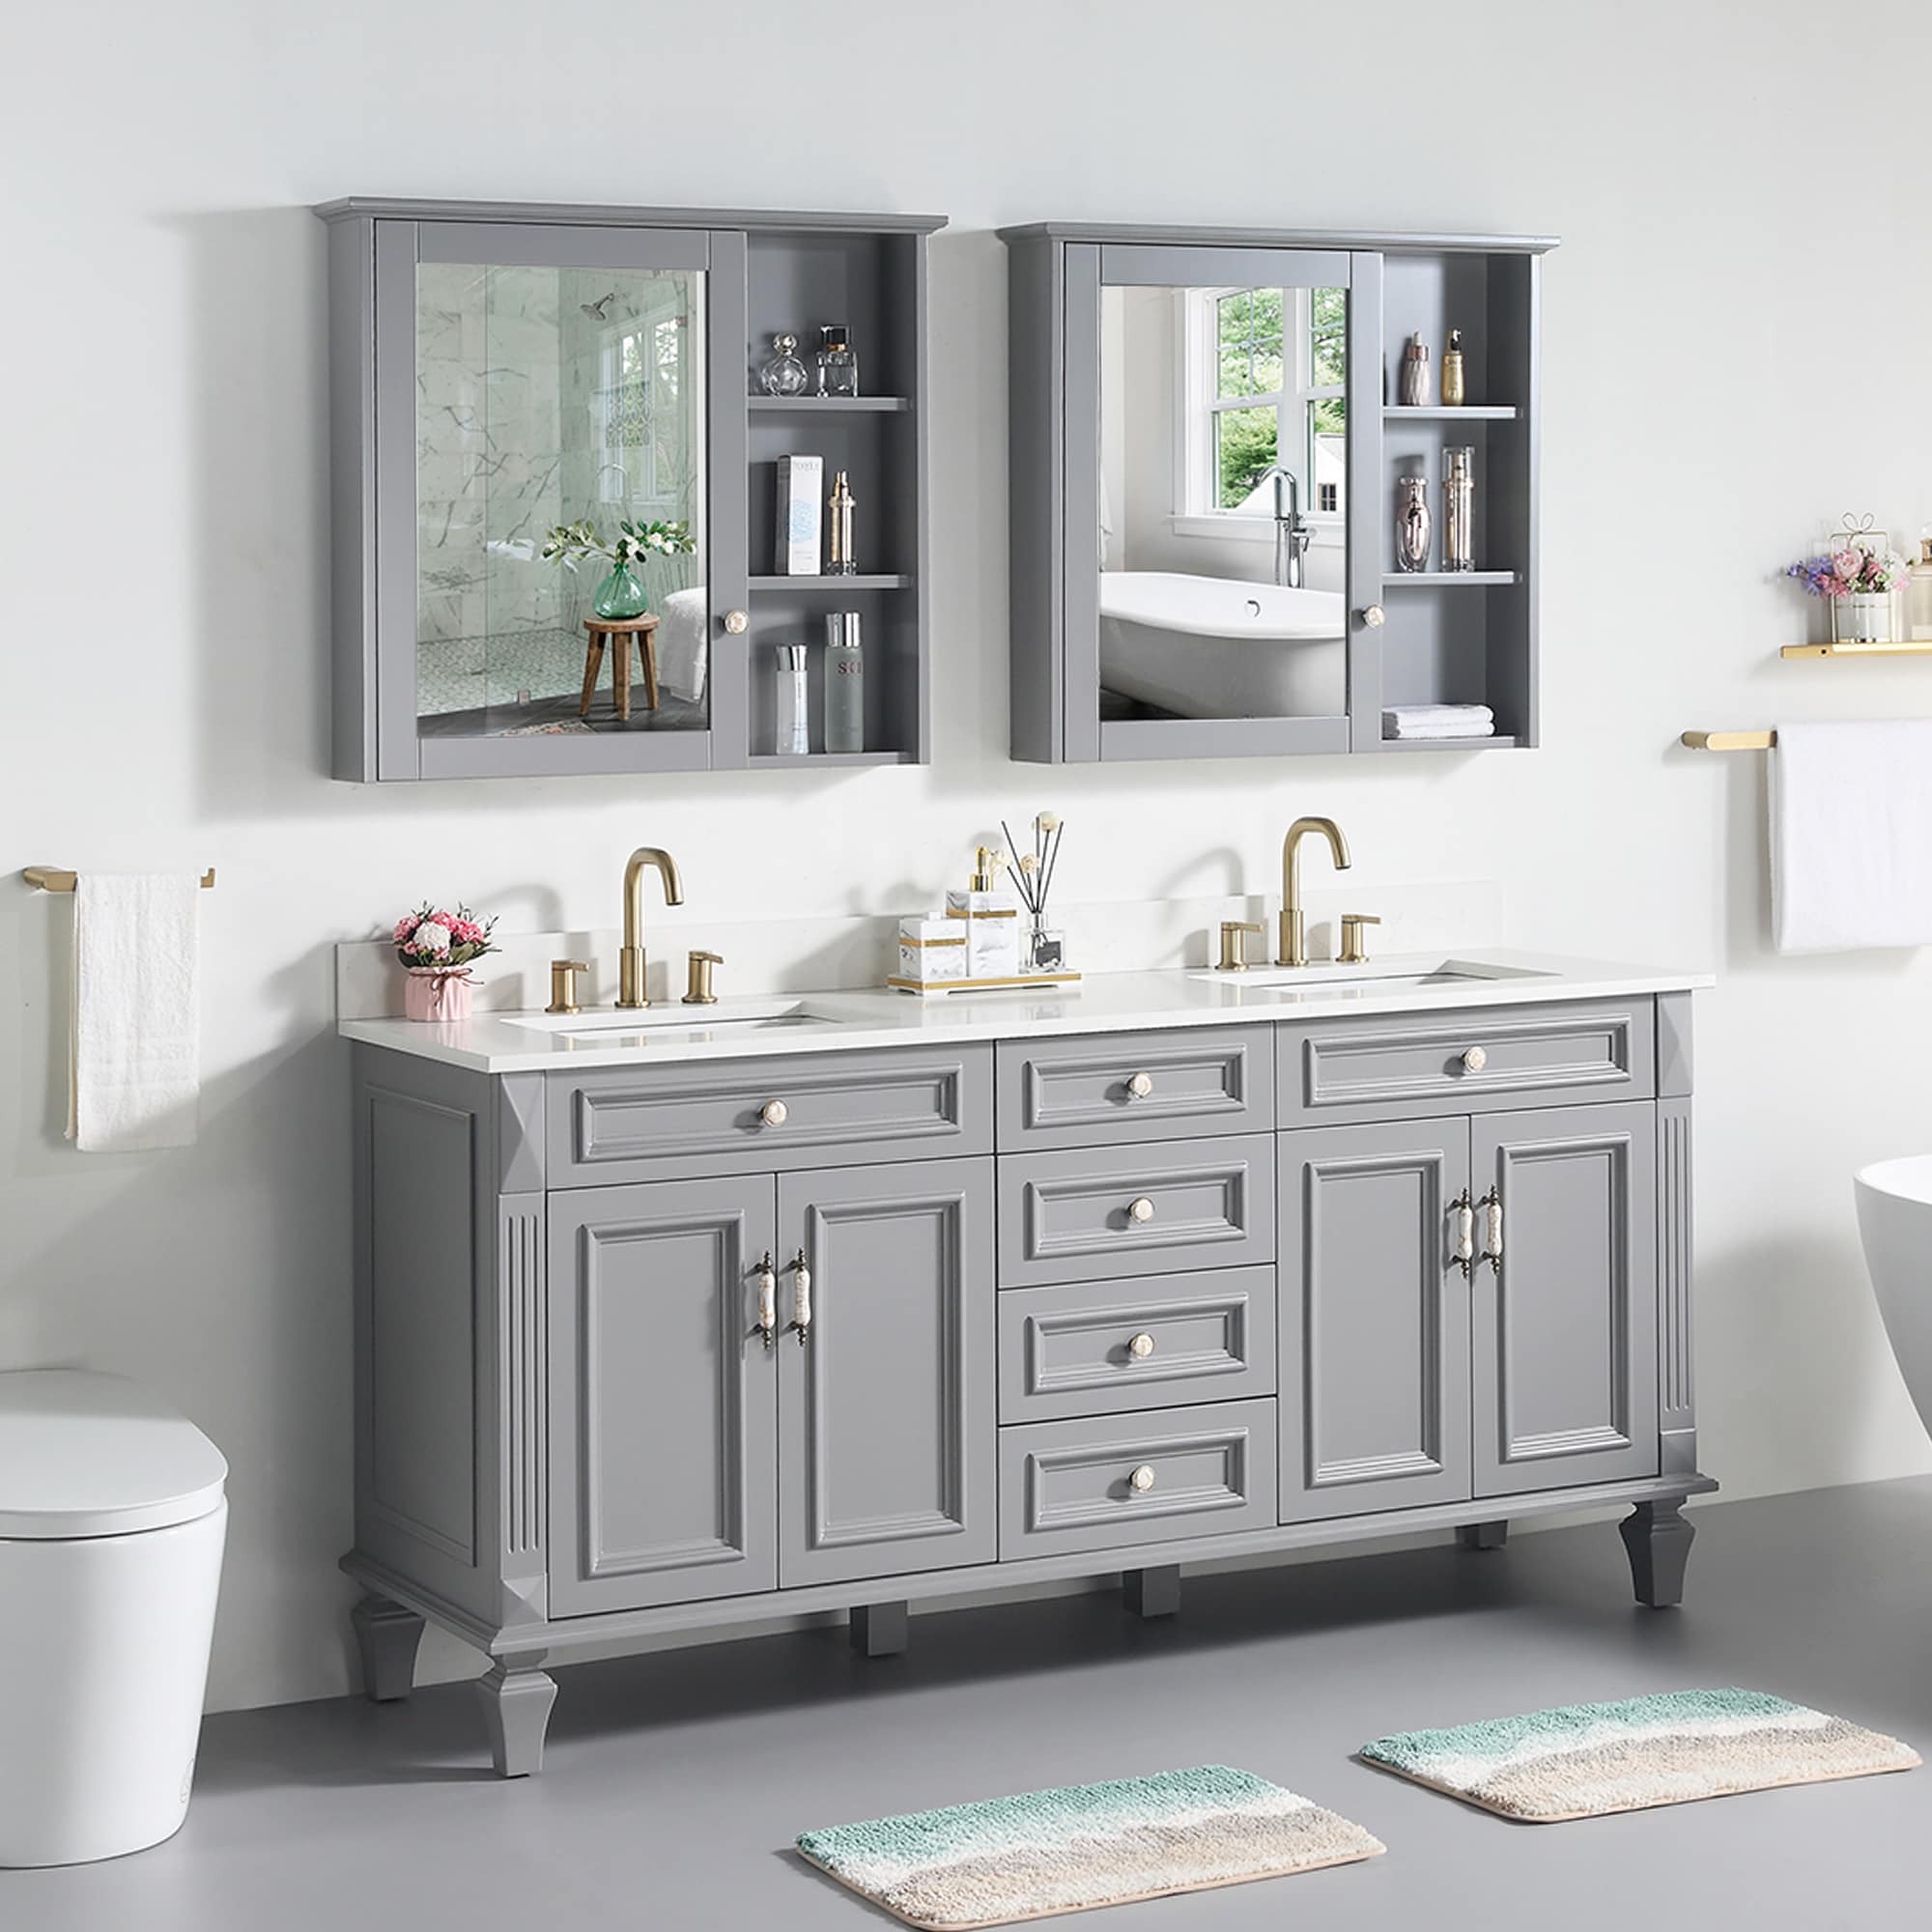 24” Pedestal Sink Bathroom Vanity Cabinet - White with 2 Shelves Vanities